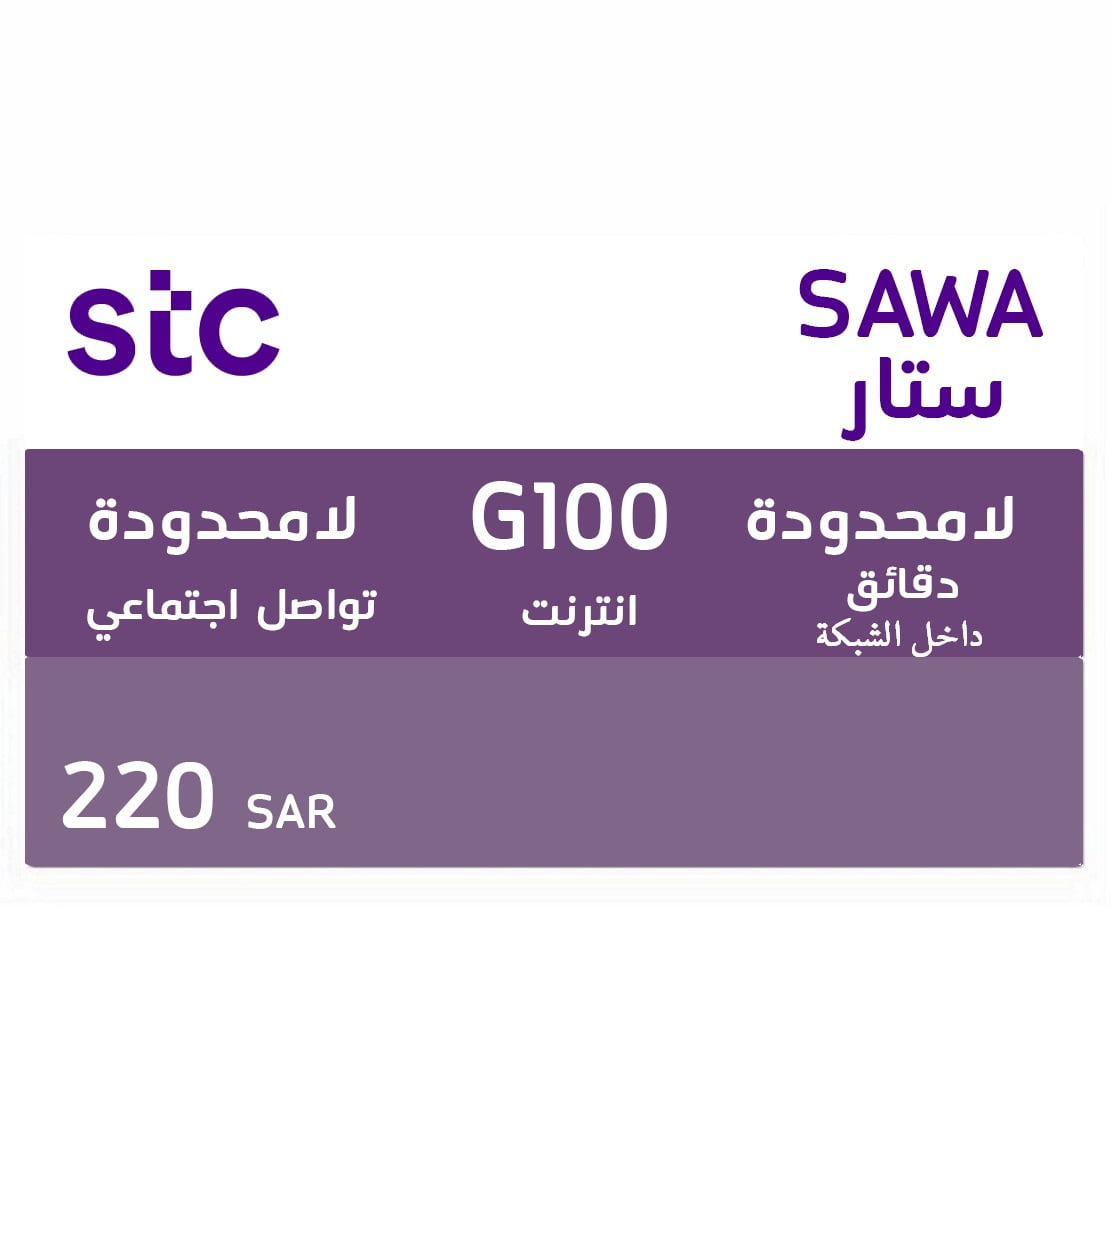 சாவா ஸ்டார் 220 SAR - KSA